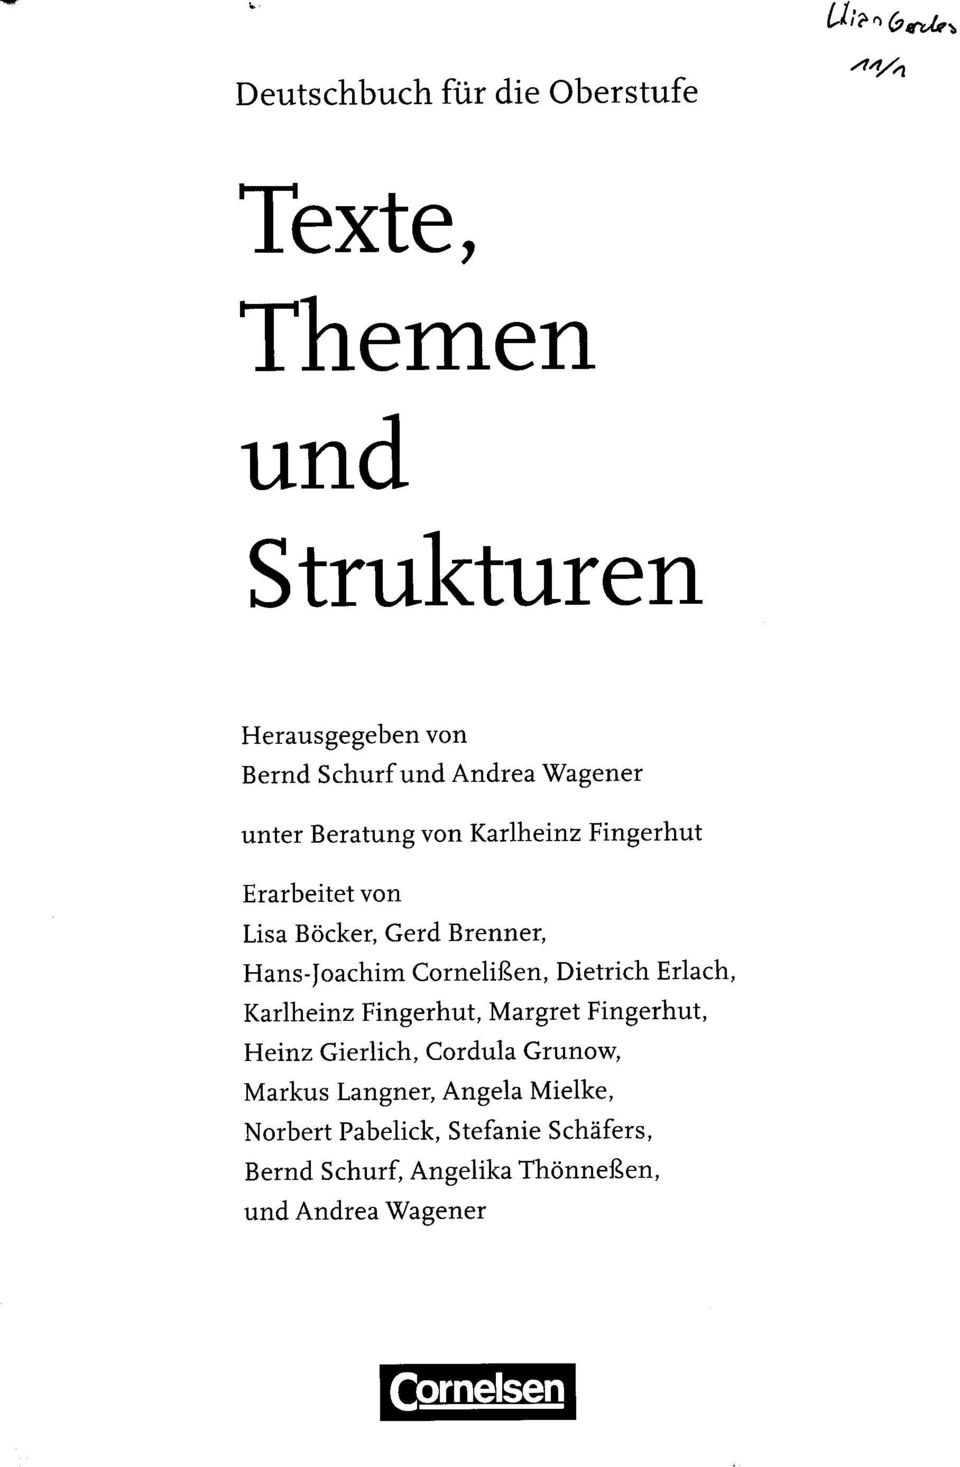 Cornelißen, Dietrich Erlach, Karlheinz Fingerhut, Margret Fingerhut, Heinz Gierlich, Cordula Grunow,